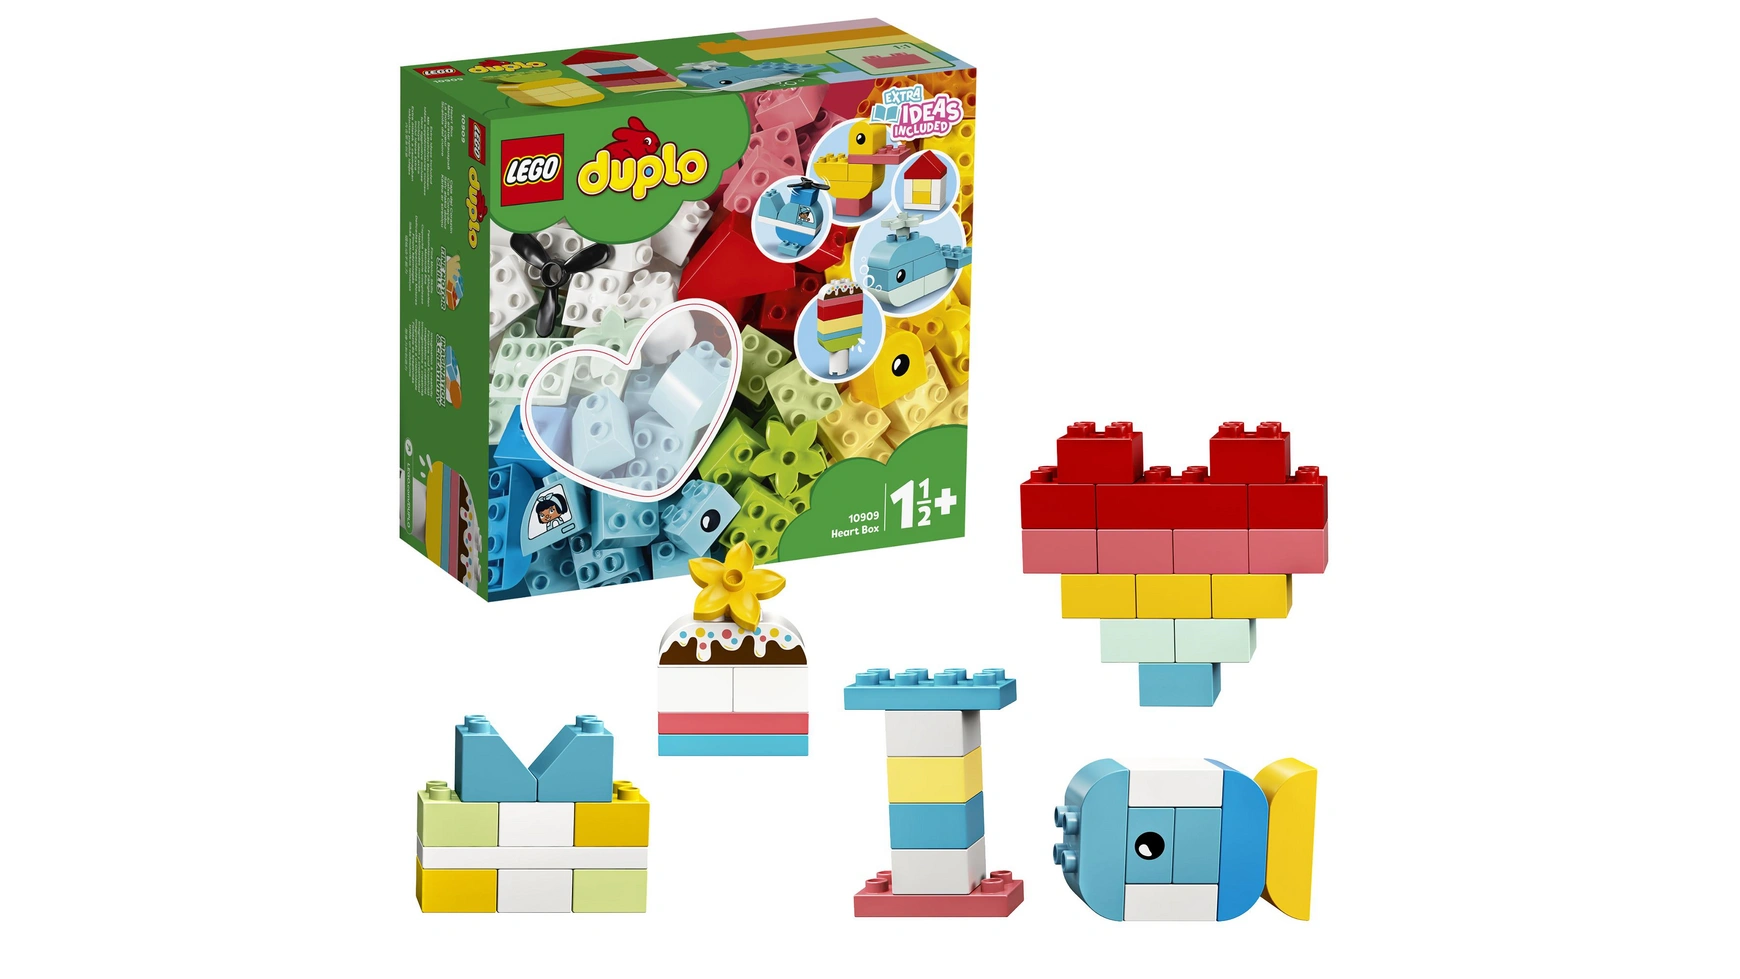 Lego DUPLO Моя первая увлекательная развивающая игрушка для сборки для детей от 1,5 лет и старше lego duplo classic кирпичная коробка креативная шкатулка игрушка от 1 5 лет